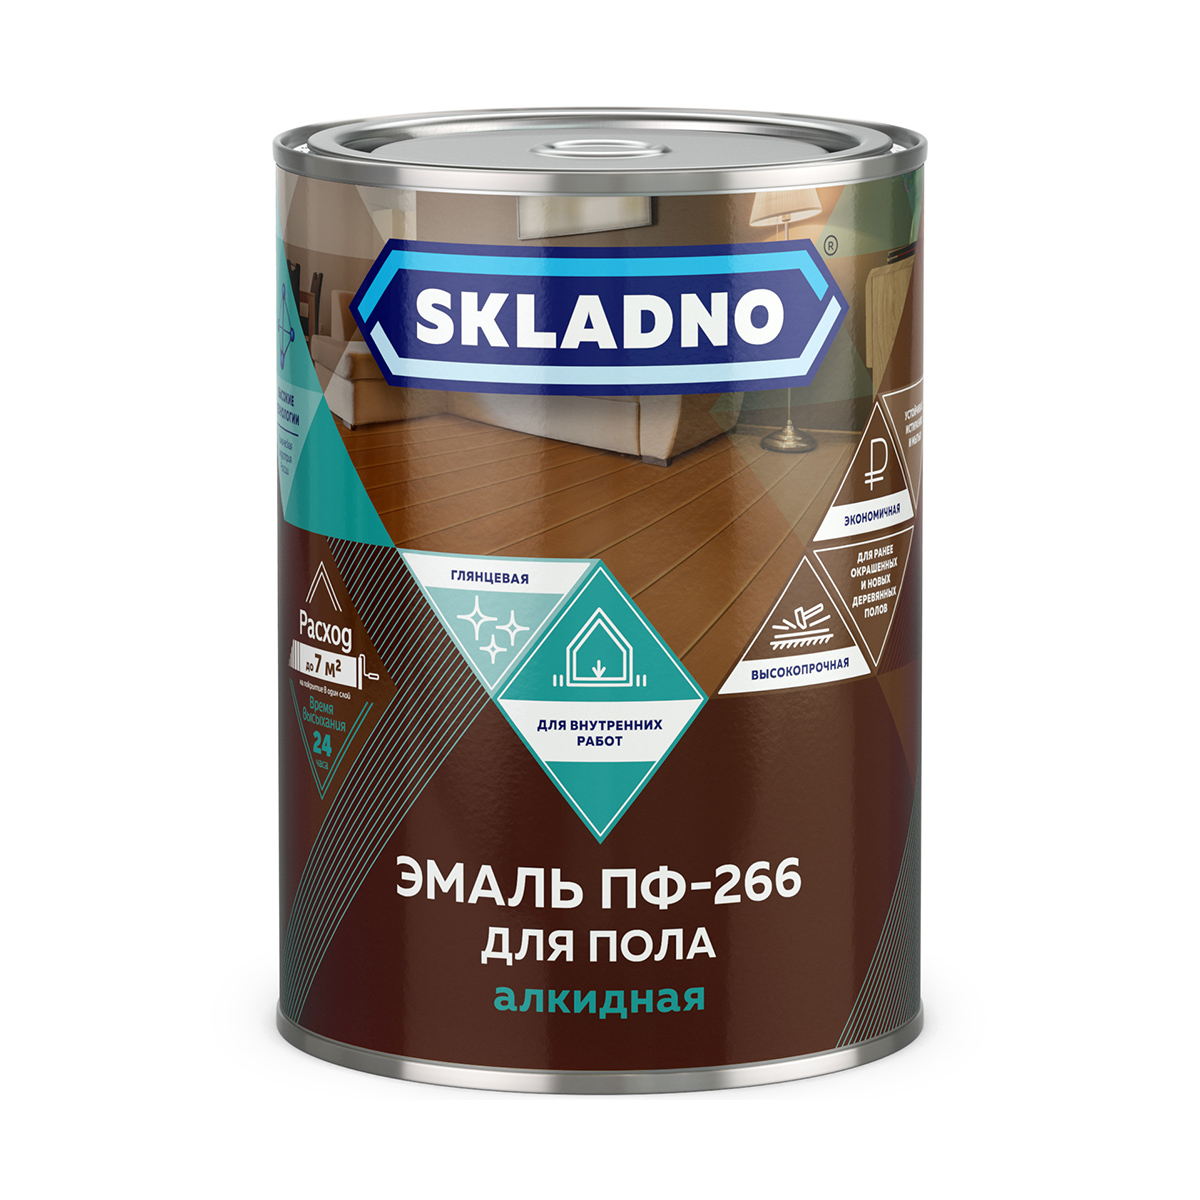 Эмаль ПФ-266 для пола Skladno, алкидная, глянцевая, 2,6 кг, золотисто-коричневая mypet ринговка для собак с кольцом pea 03 коричневая